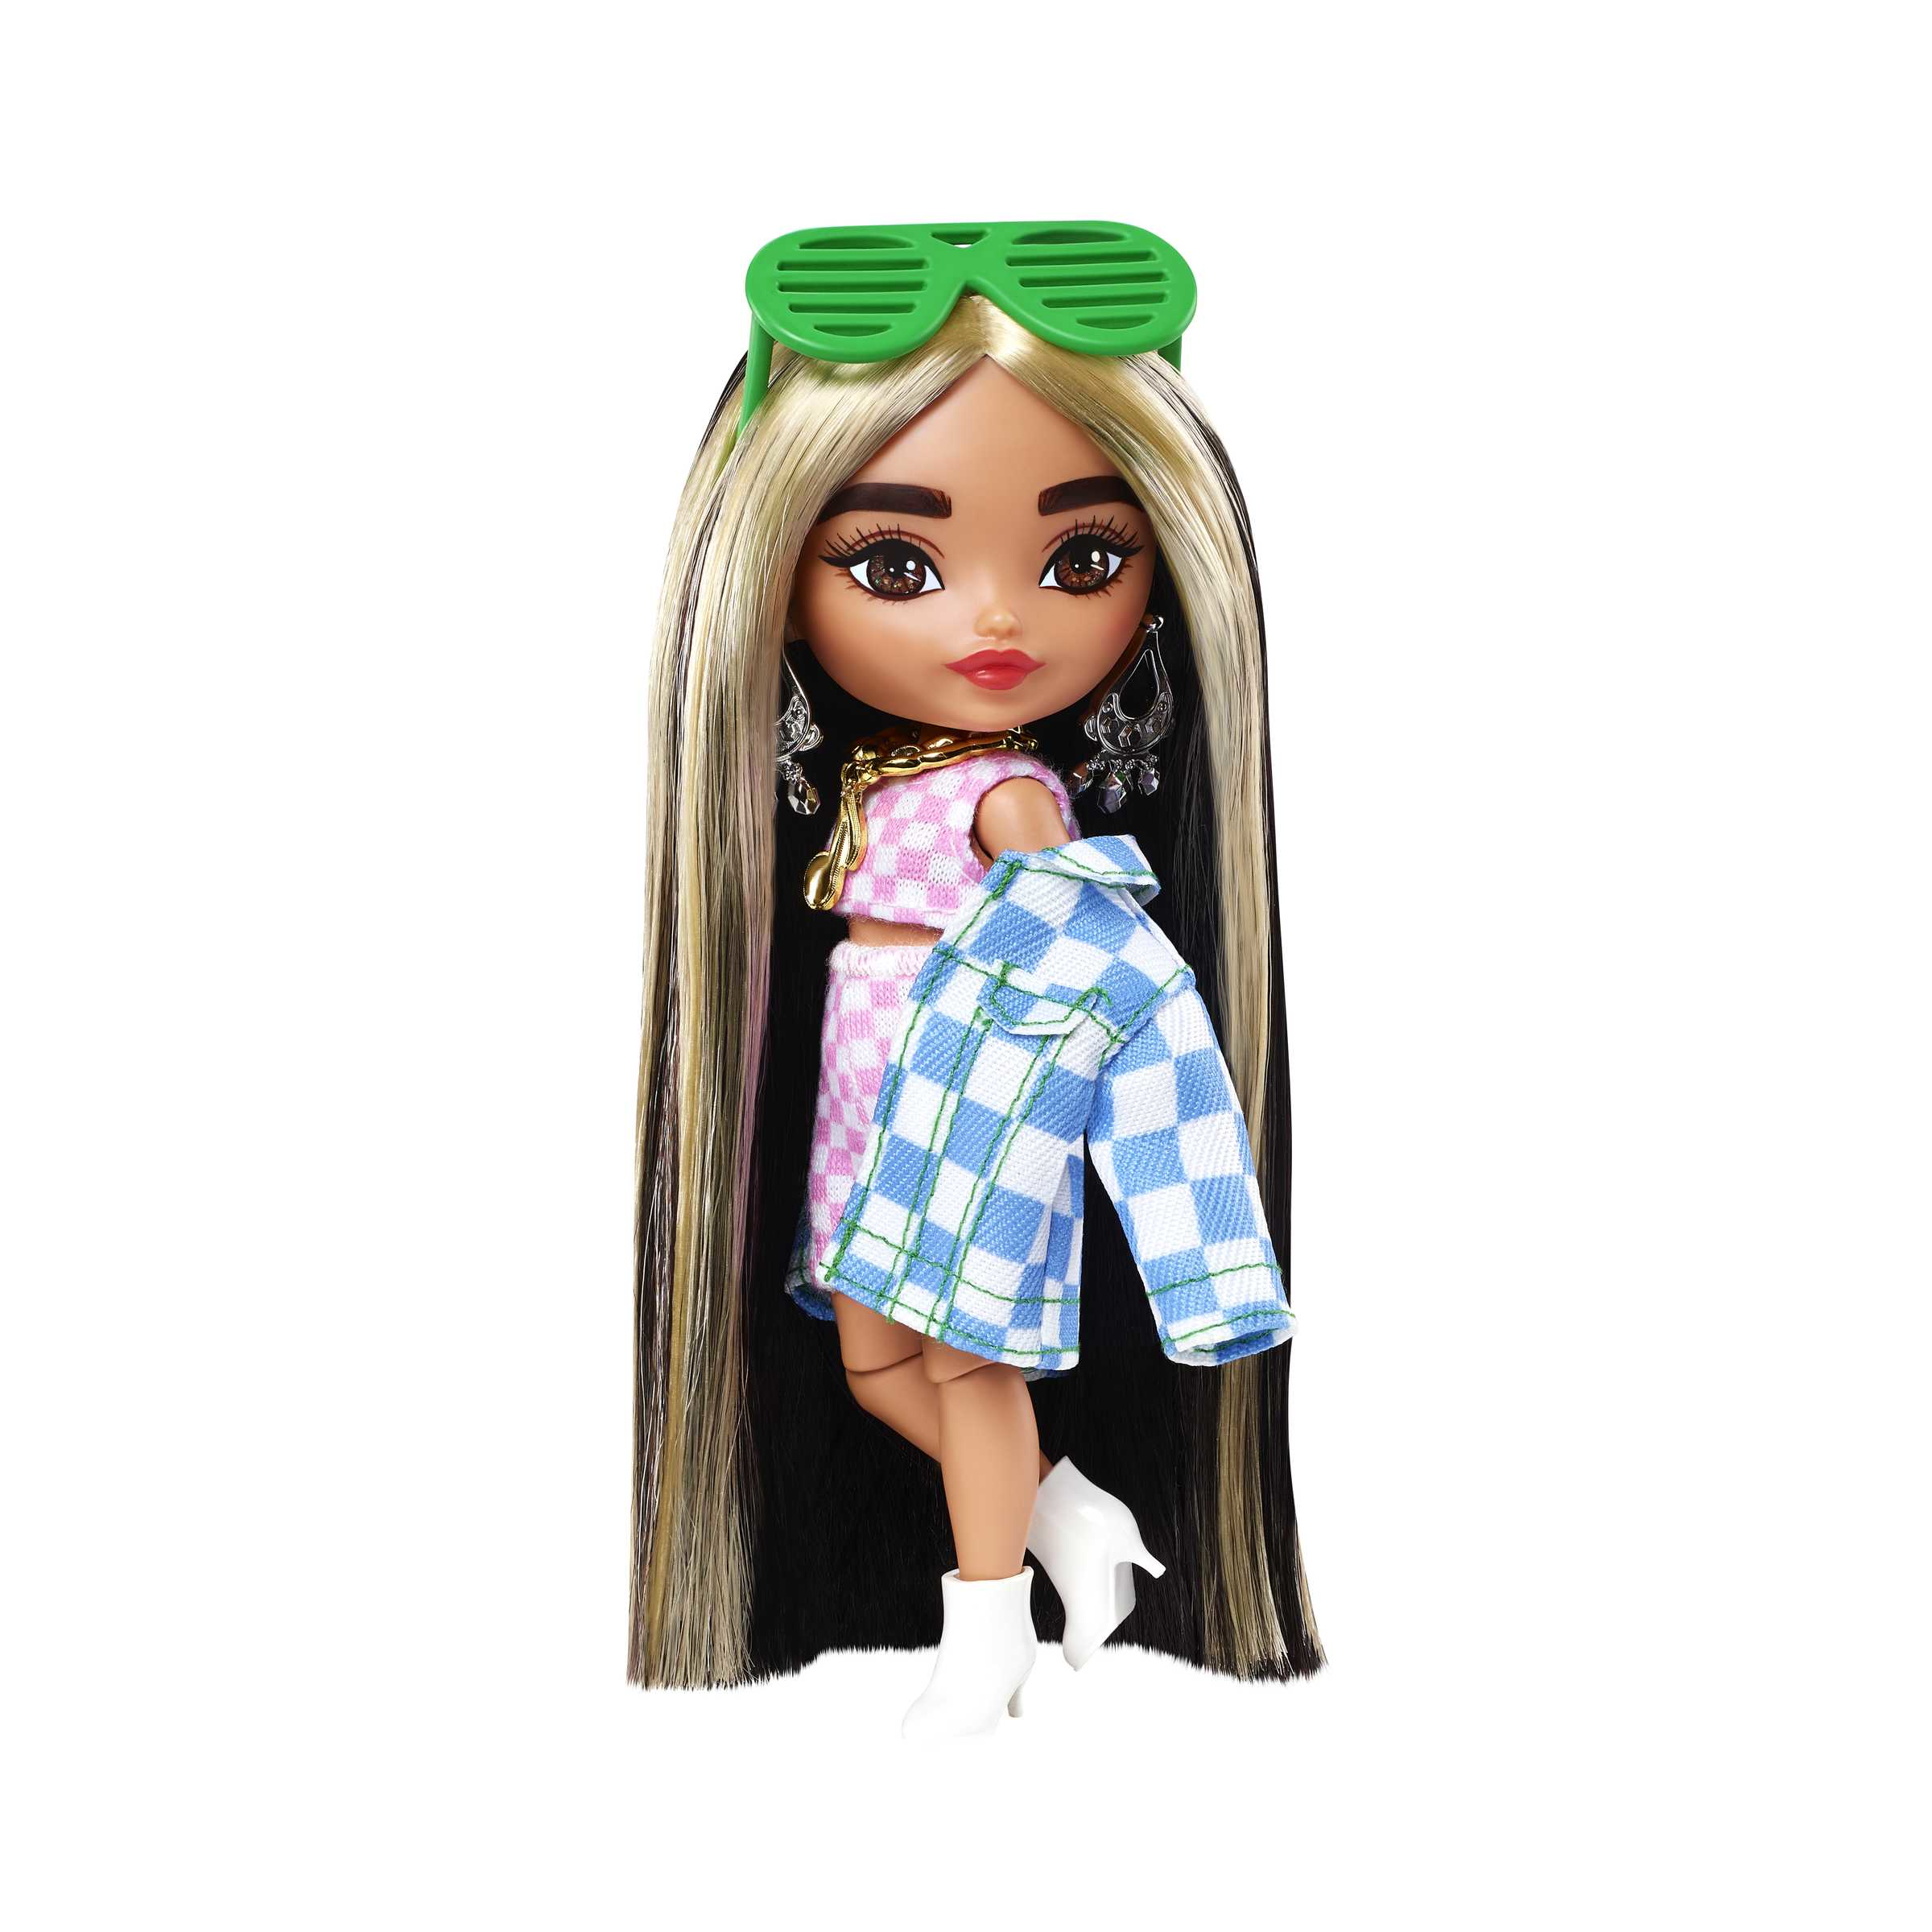 Barbie-extra minis mini bambola articolata con giacca a quadri e morbidi capelli bicolore, giocattolo per bambini 3+ anni, hgp64 - Barbie